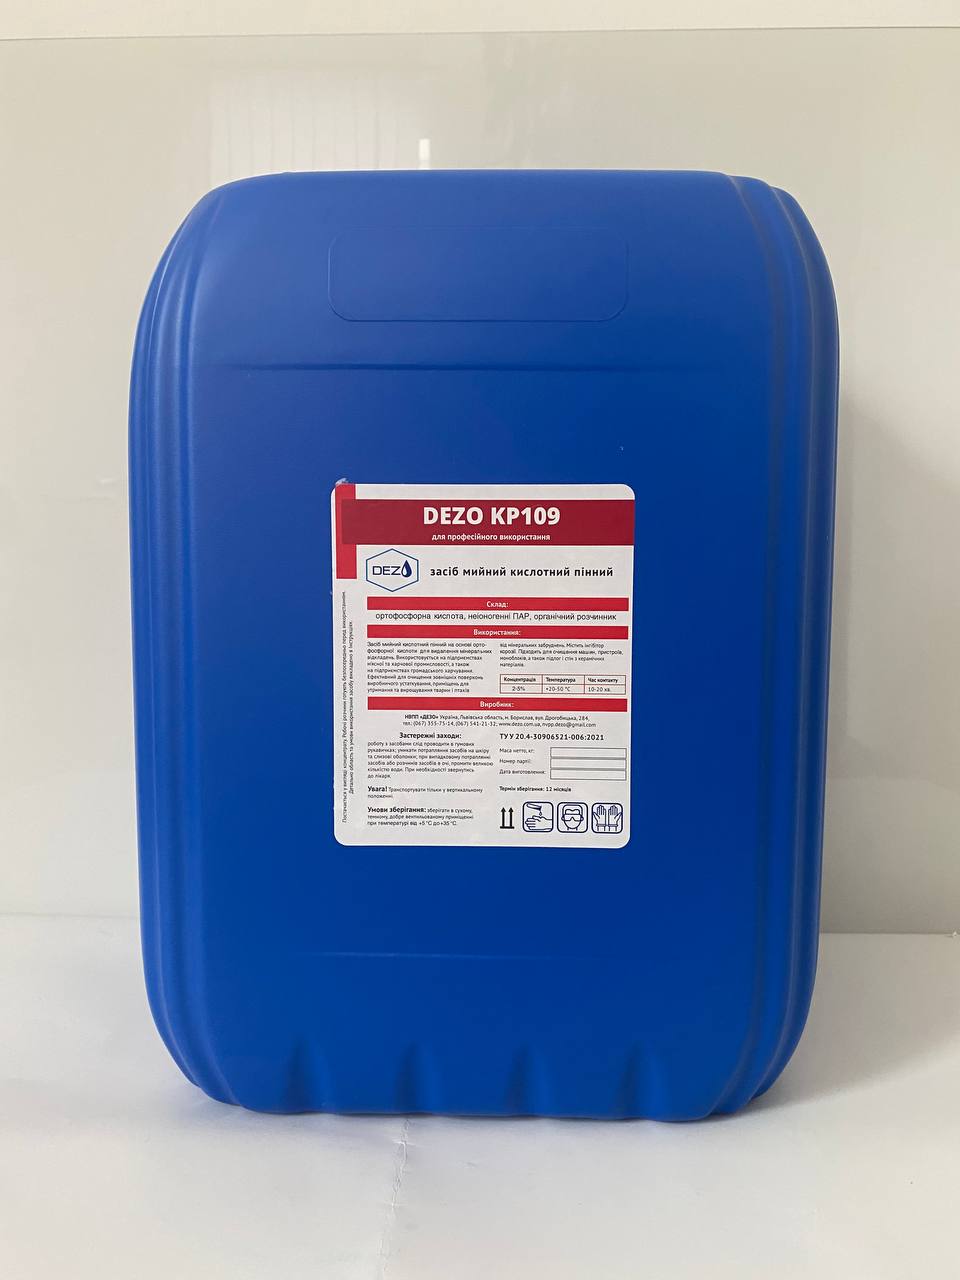 Засіб мийний кислотний пінний DEZO KP109, 23 кг